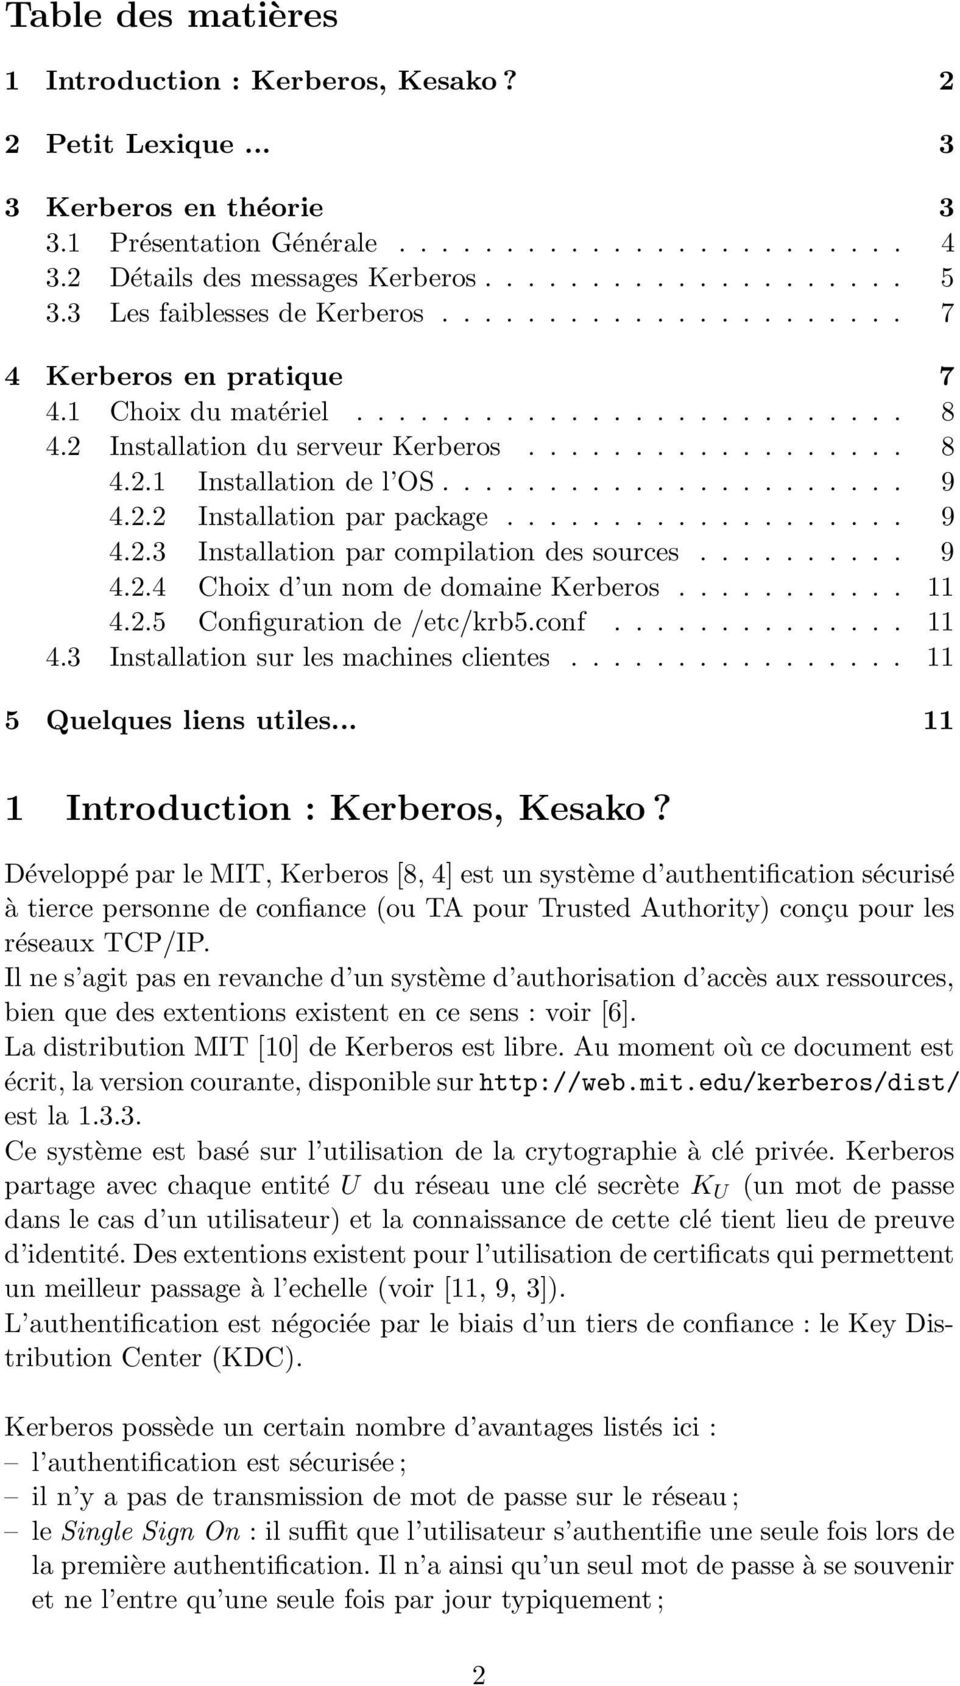 ..................... 9 4.2.2 Installation par package................... 9 4.2.3 Installation par compilation des sources.......... 9 4.2.4 Choix d un nom de domaine Kerberos........... 11 4.2.5 Configuration de /etc/krb5.